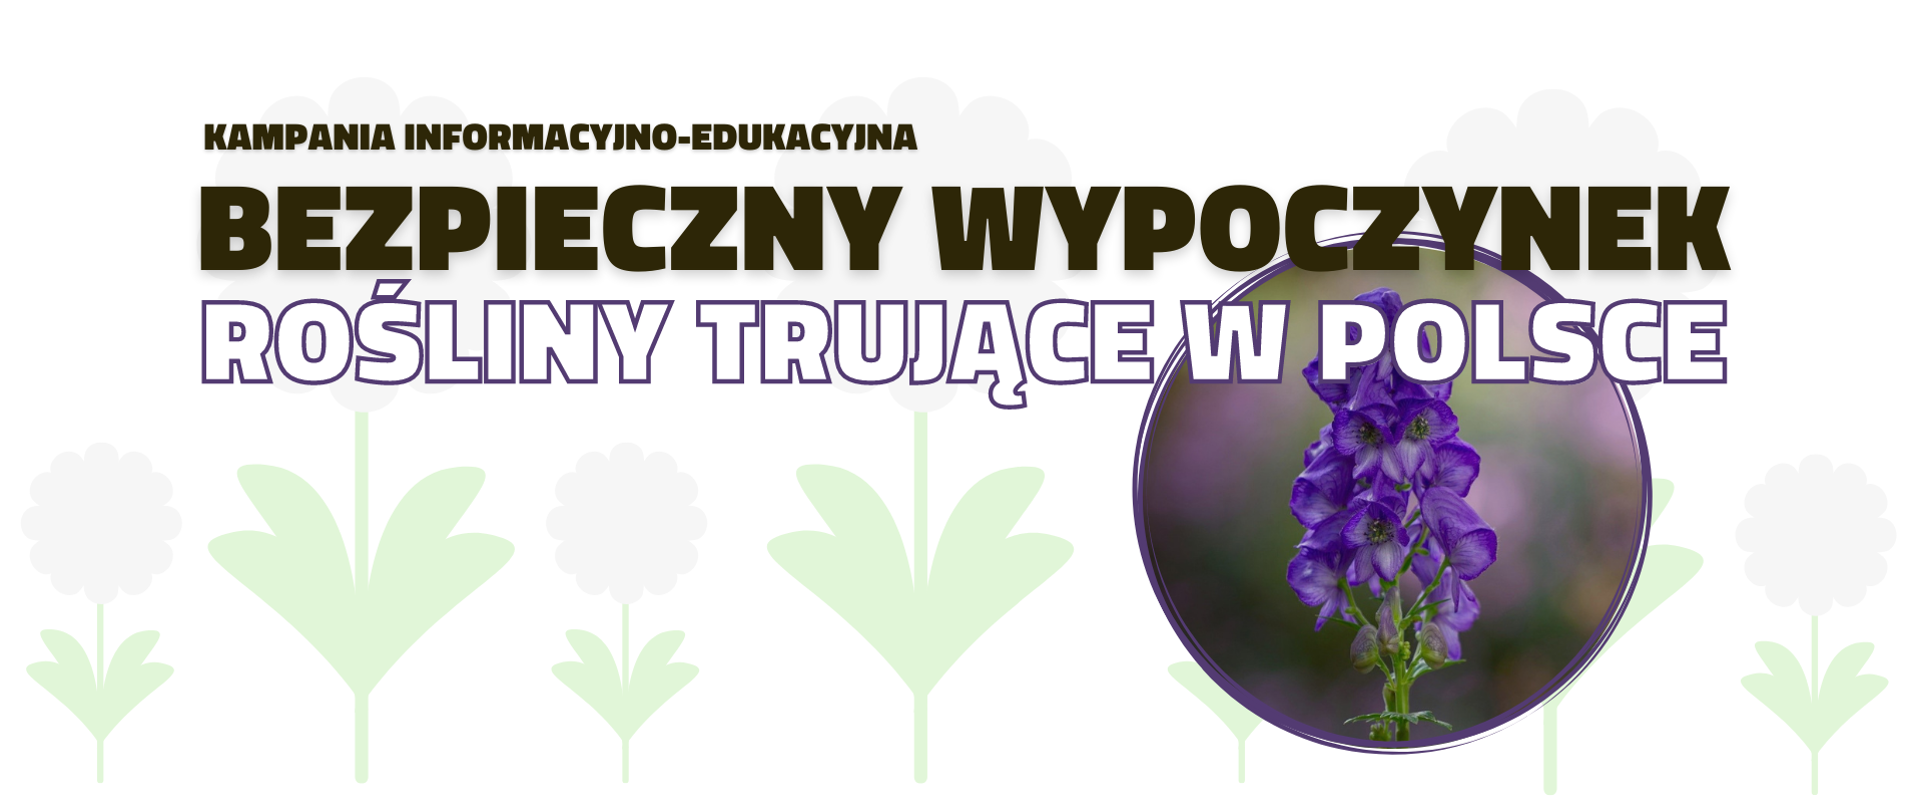 Bezpieczny wypoczynek - rosliny trujące w Polsce